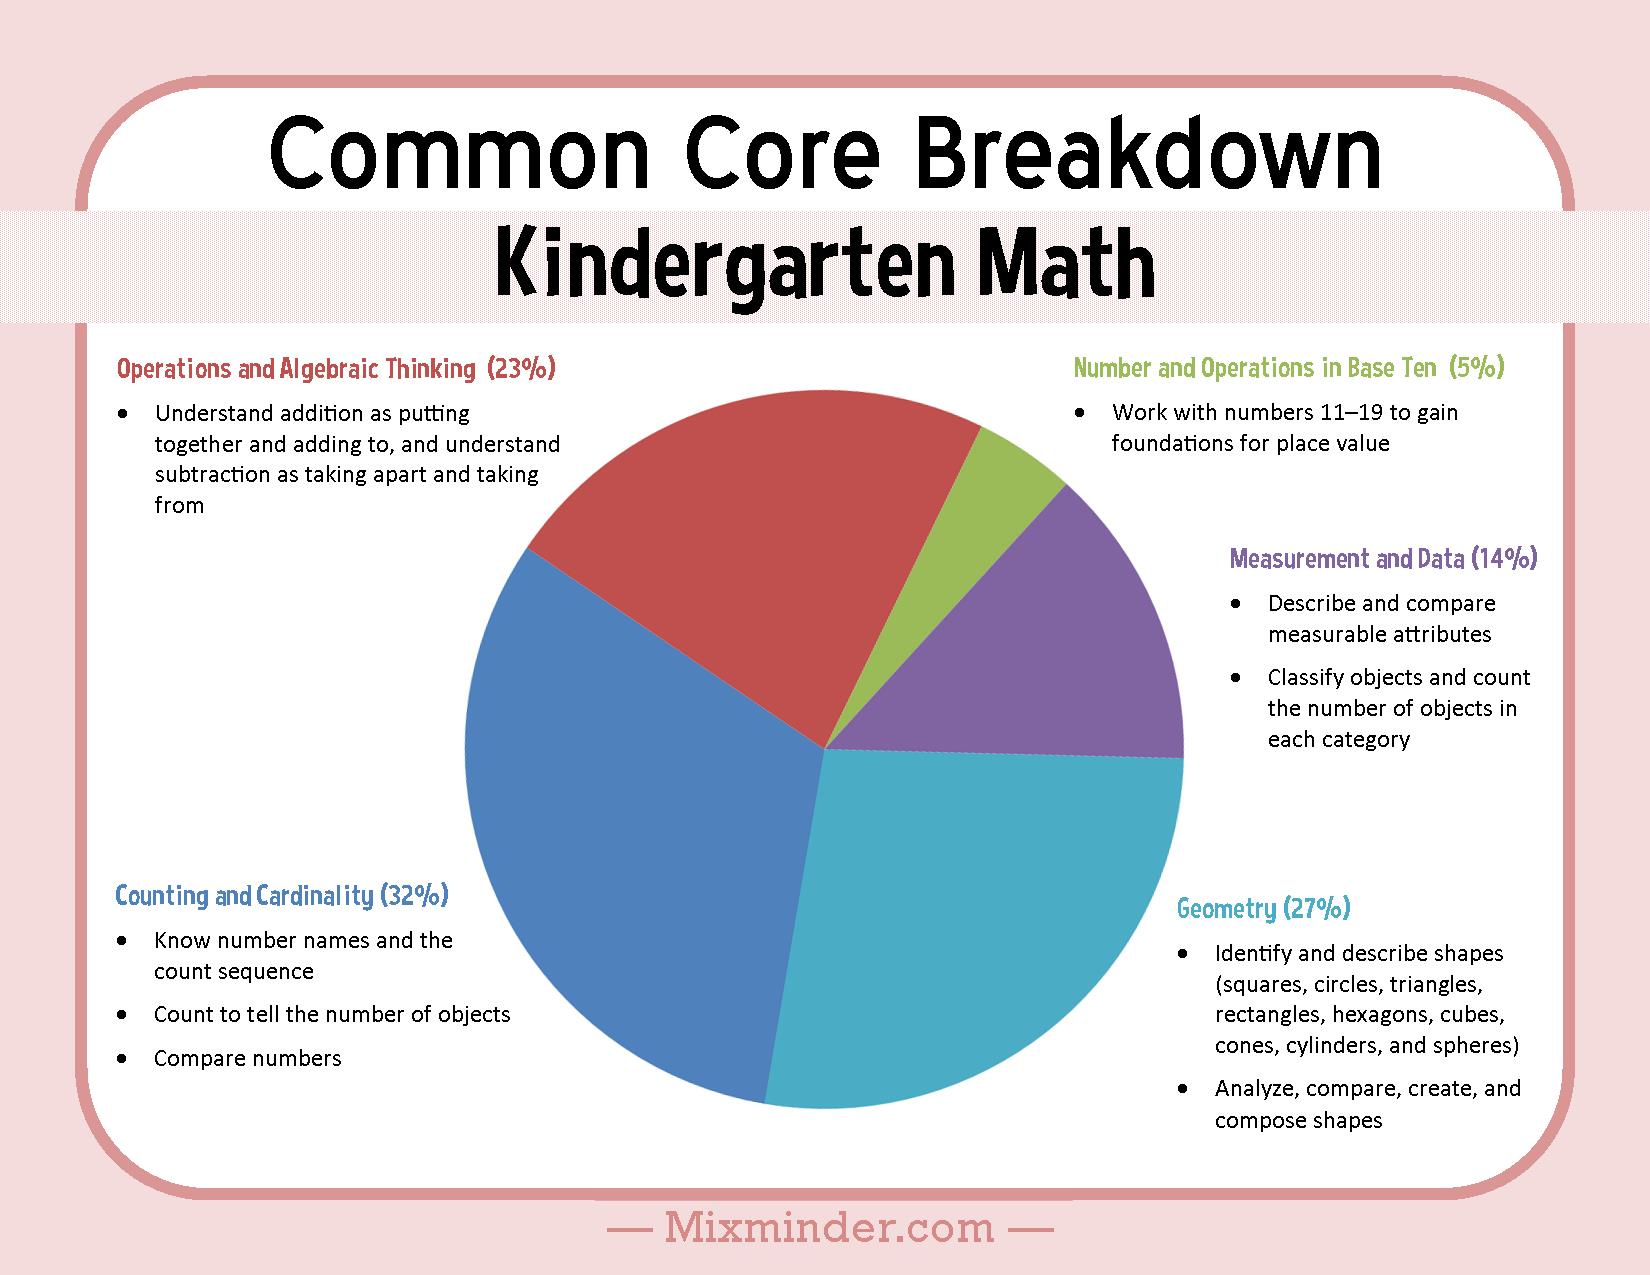 Kindergarten Math Common Core Breakdown